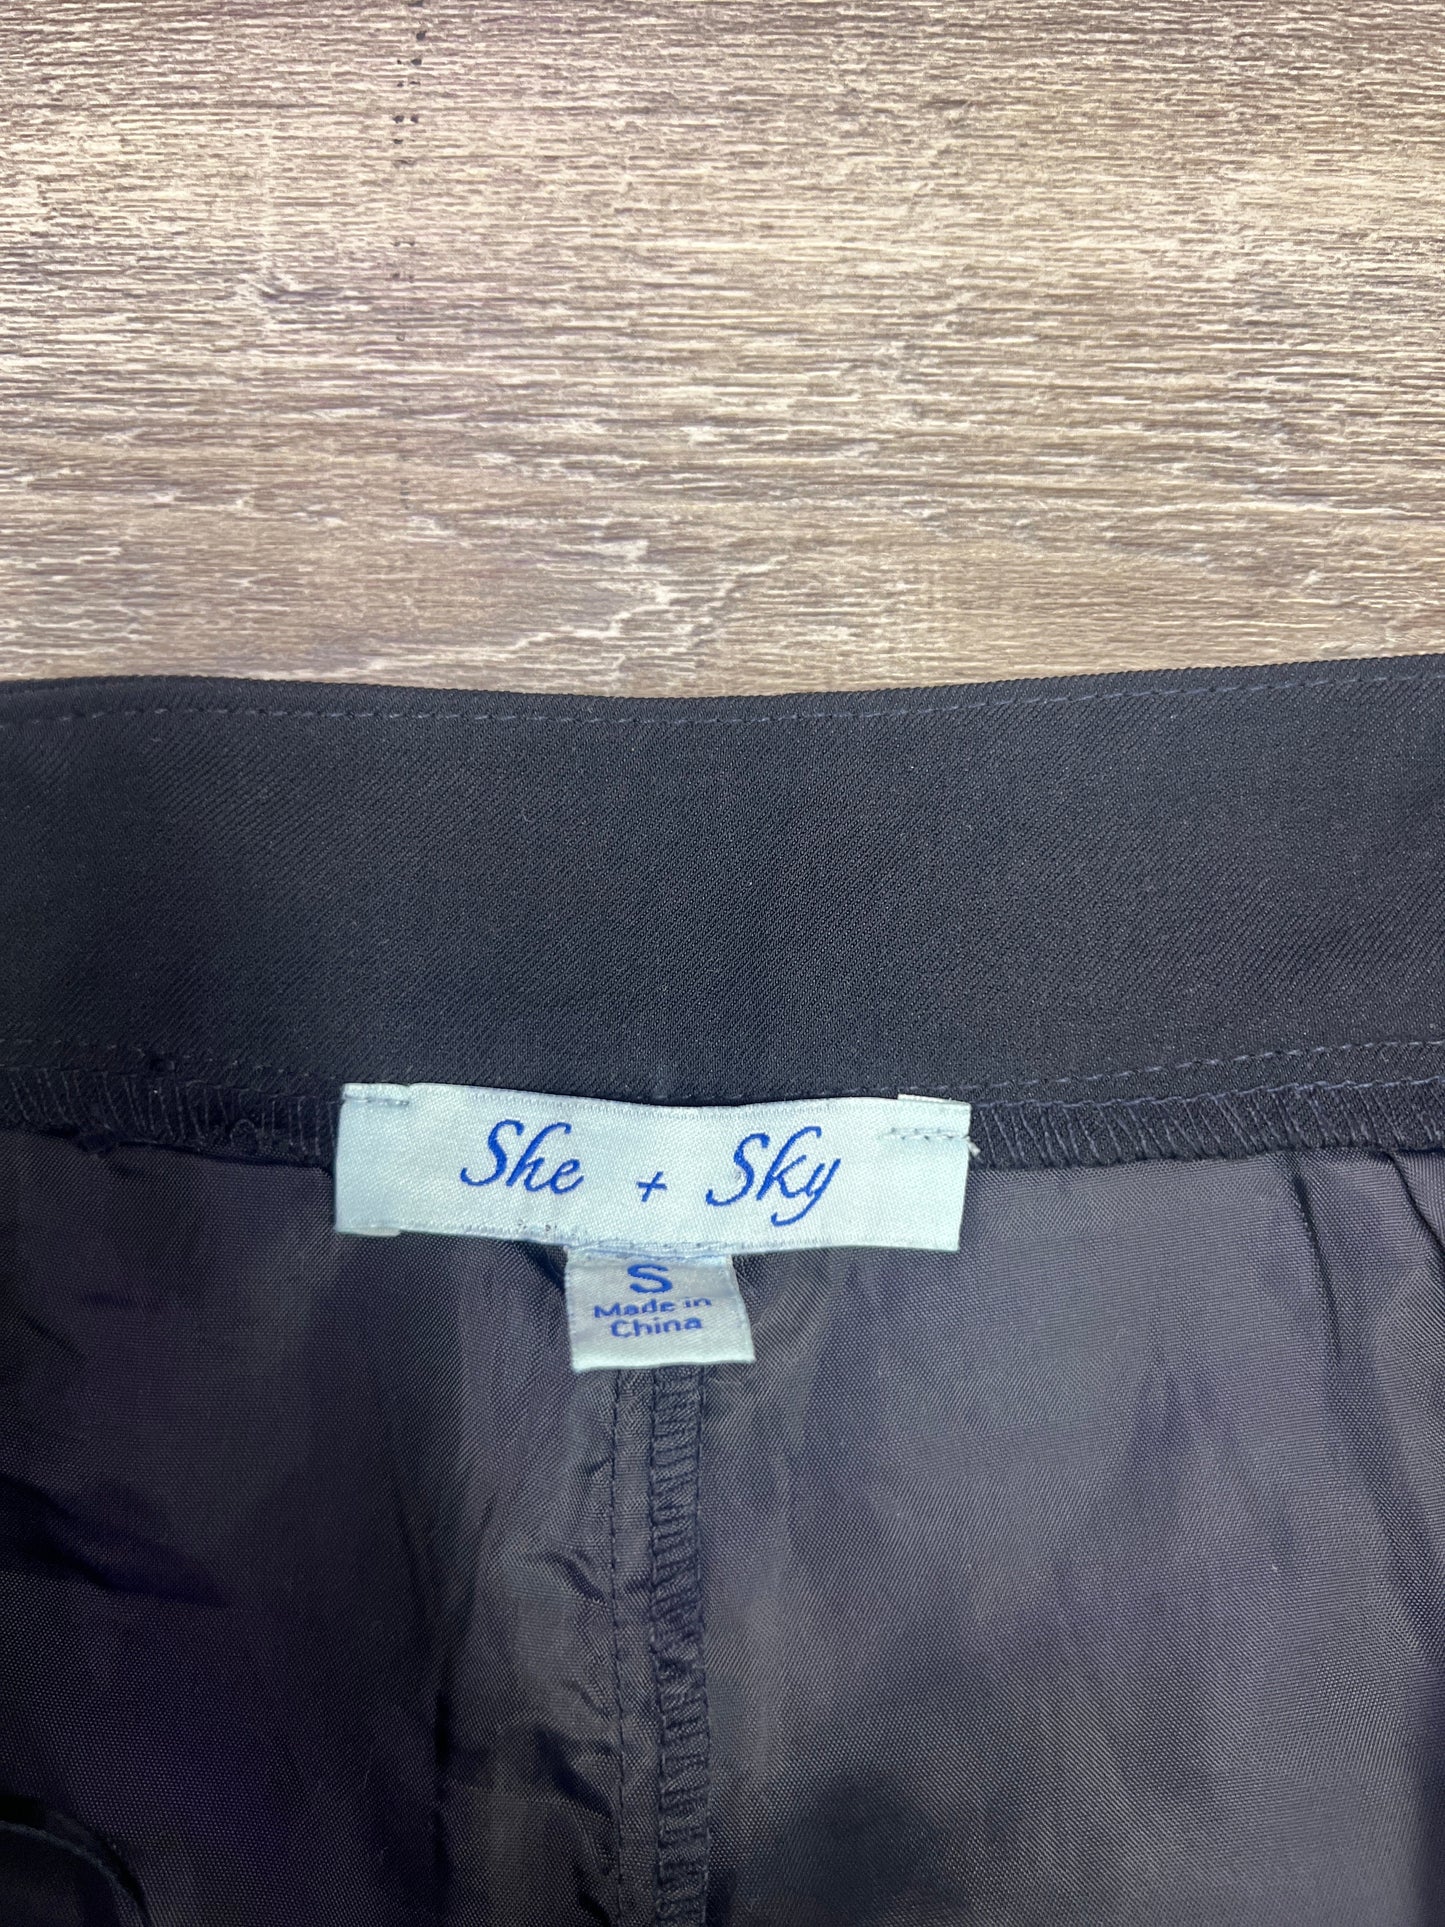 Shorts By She + Sky Size: S